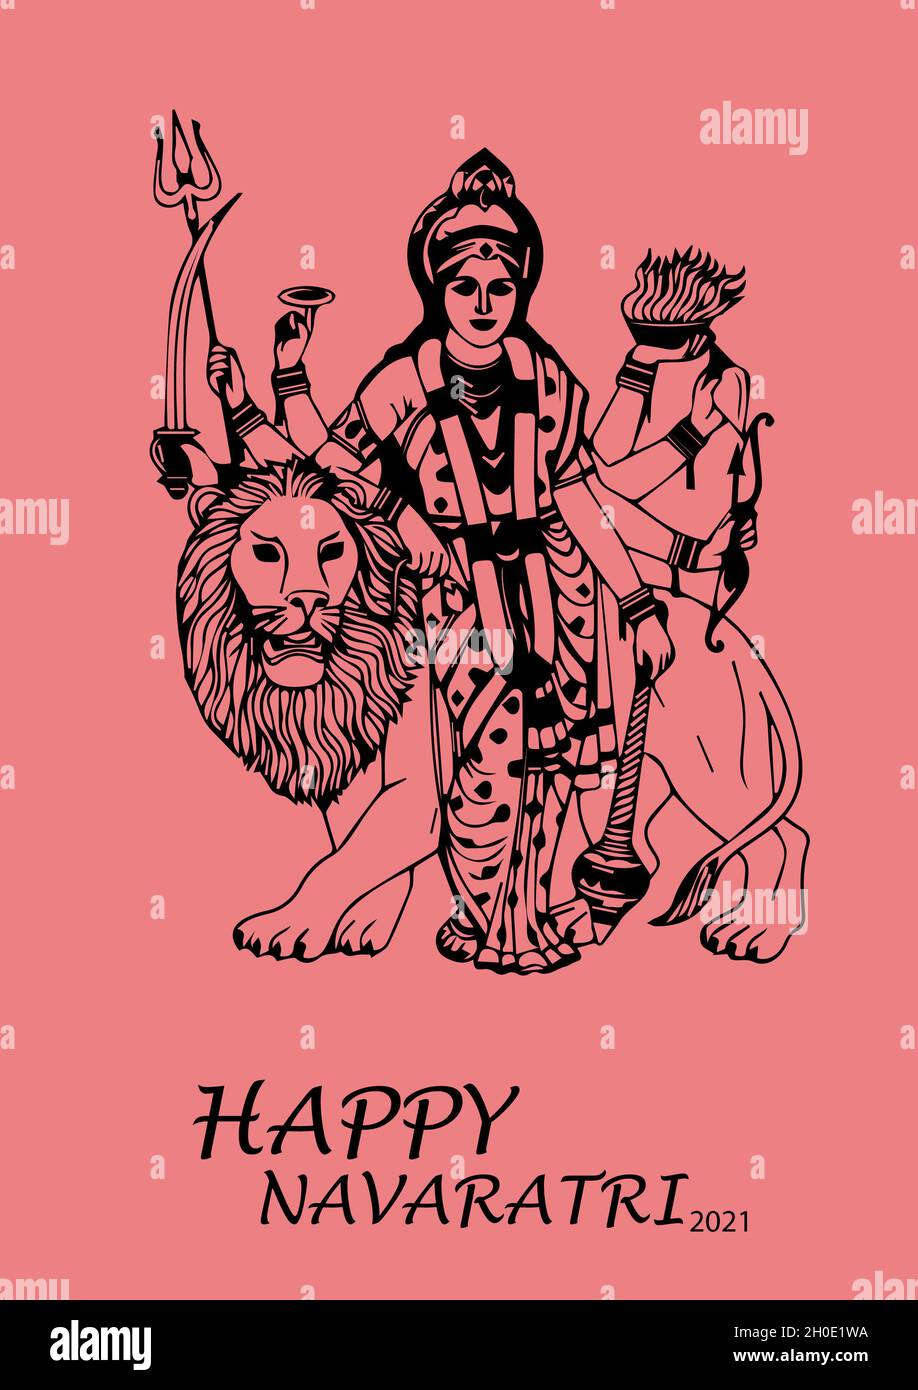 Happy Navaratri 2021, Happy Navaratri die besten Wünsche, indische Festfeier Stockfoto